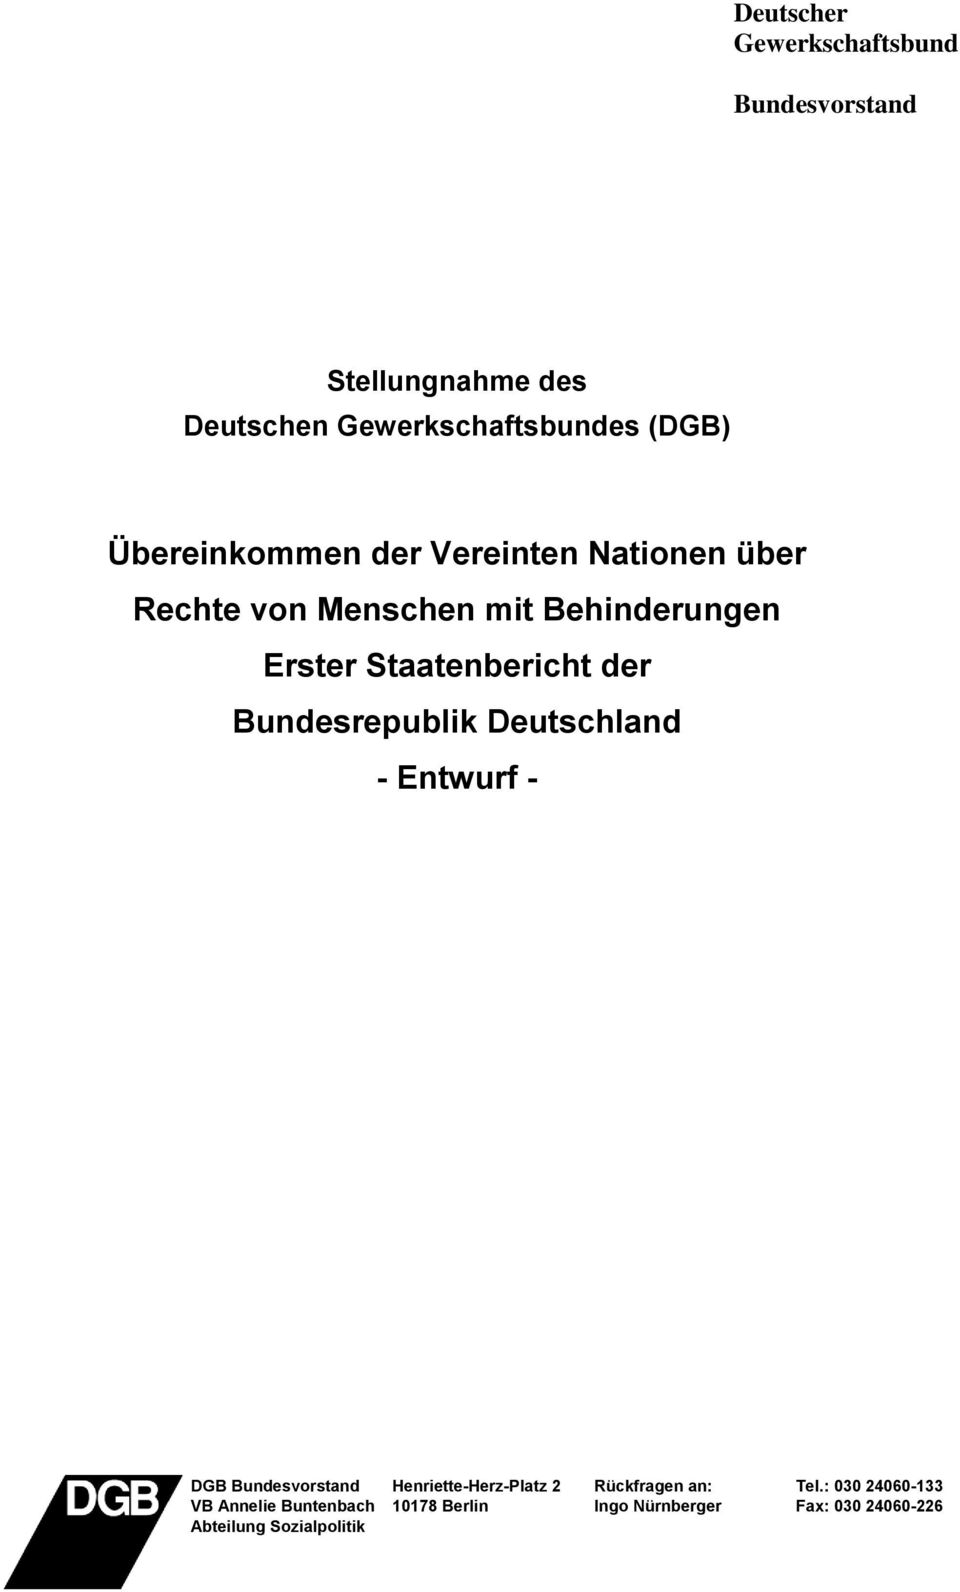 Deutschland - Entwurf - DGB Bundesvorstand VB Annelie Buntenbach Abteilung Sozialpolitik